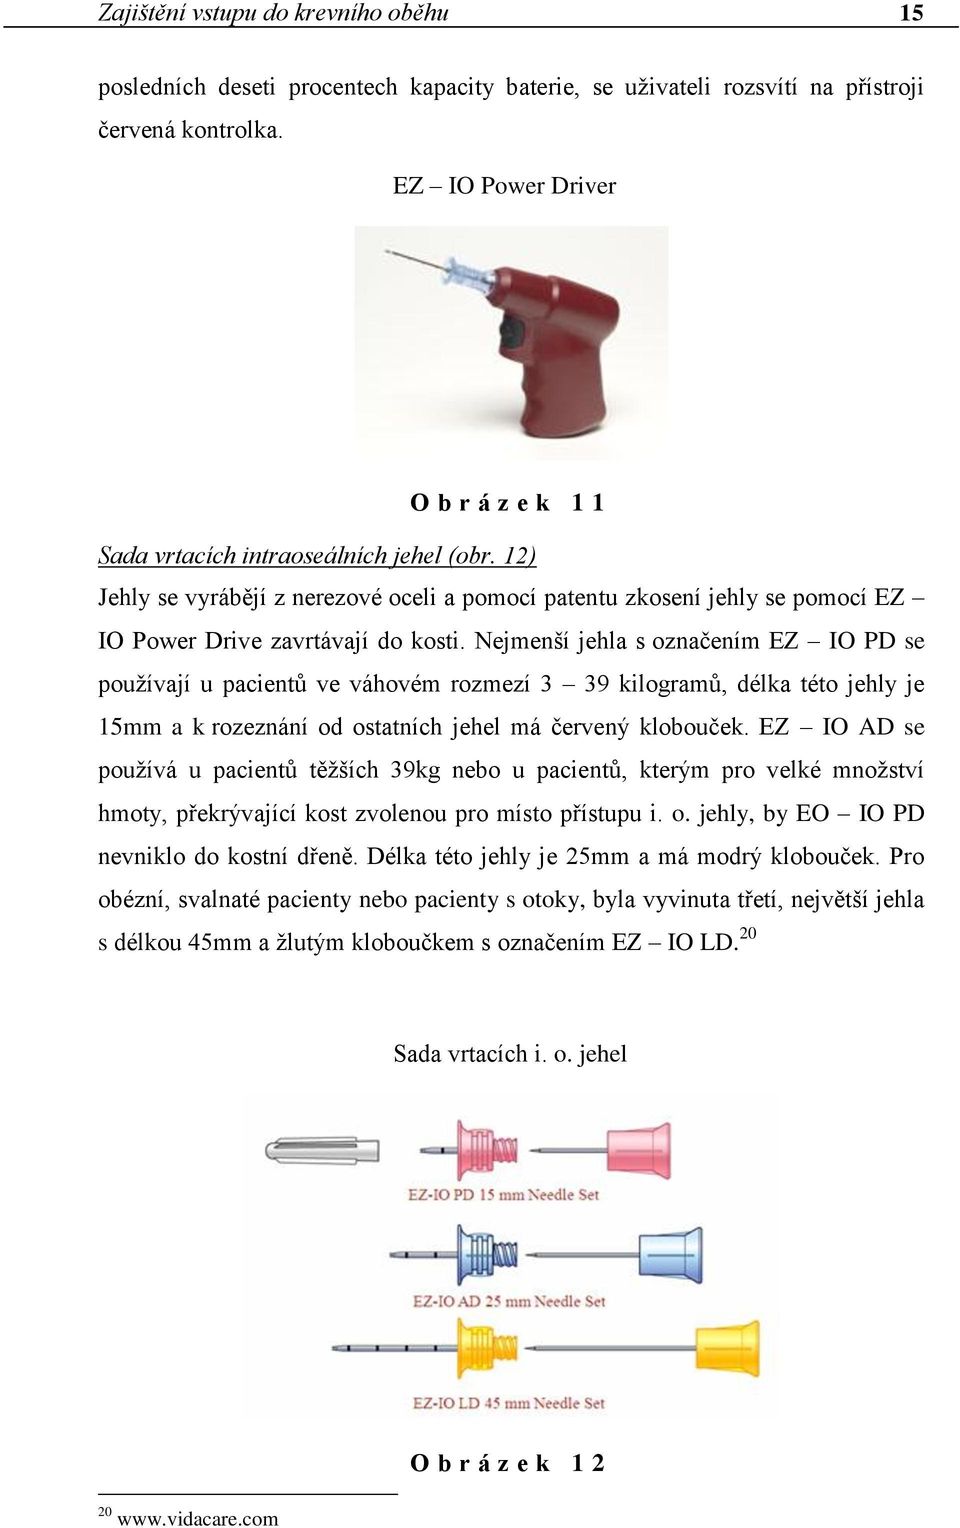 Nejmenší jehla s označením EZ IO PD se používají u pacientů ve váhovém rozmezí 3 39 kilogramů, délka této jehly je 15mm a k rozeznání od ostatních jehel má červený klobouček.